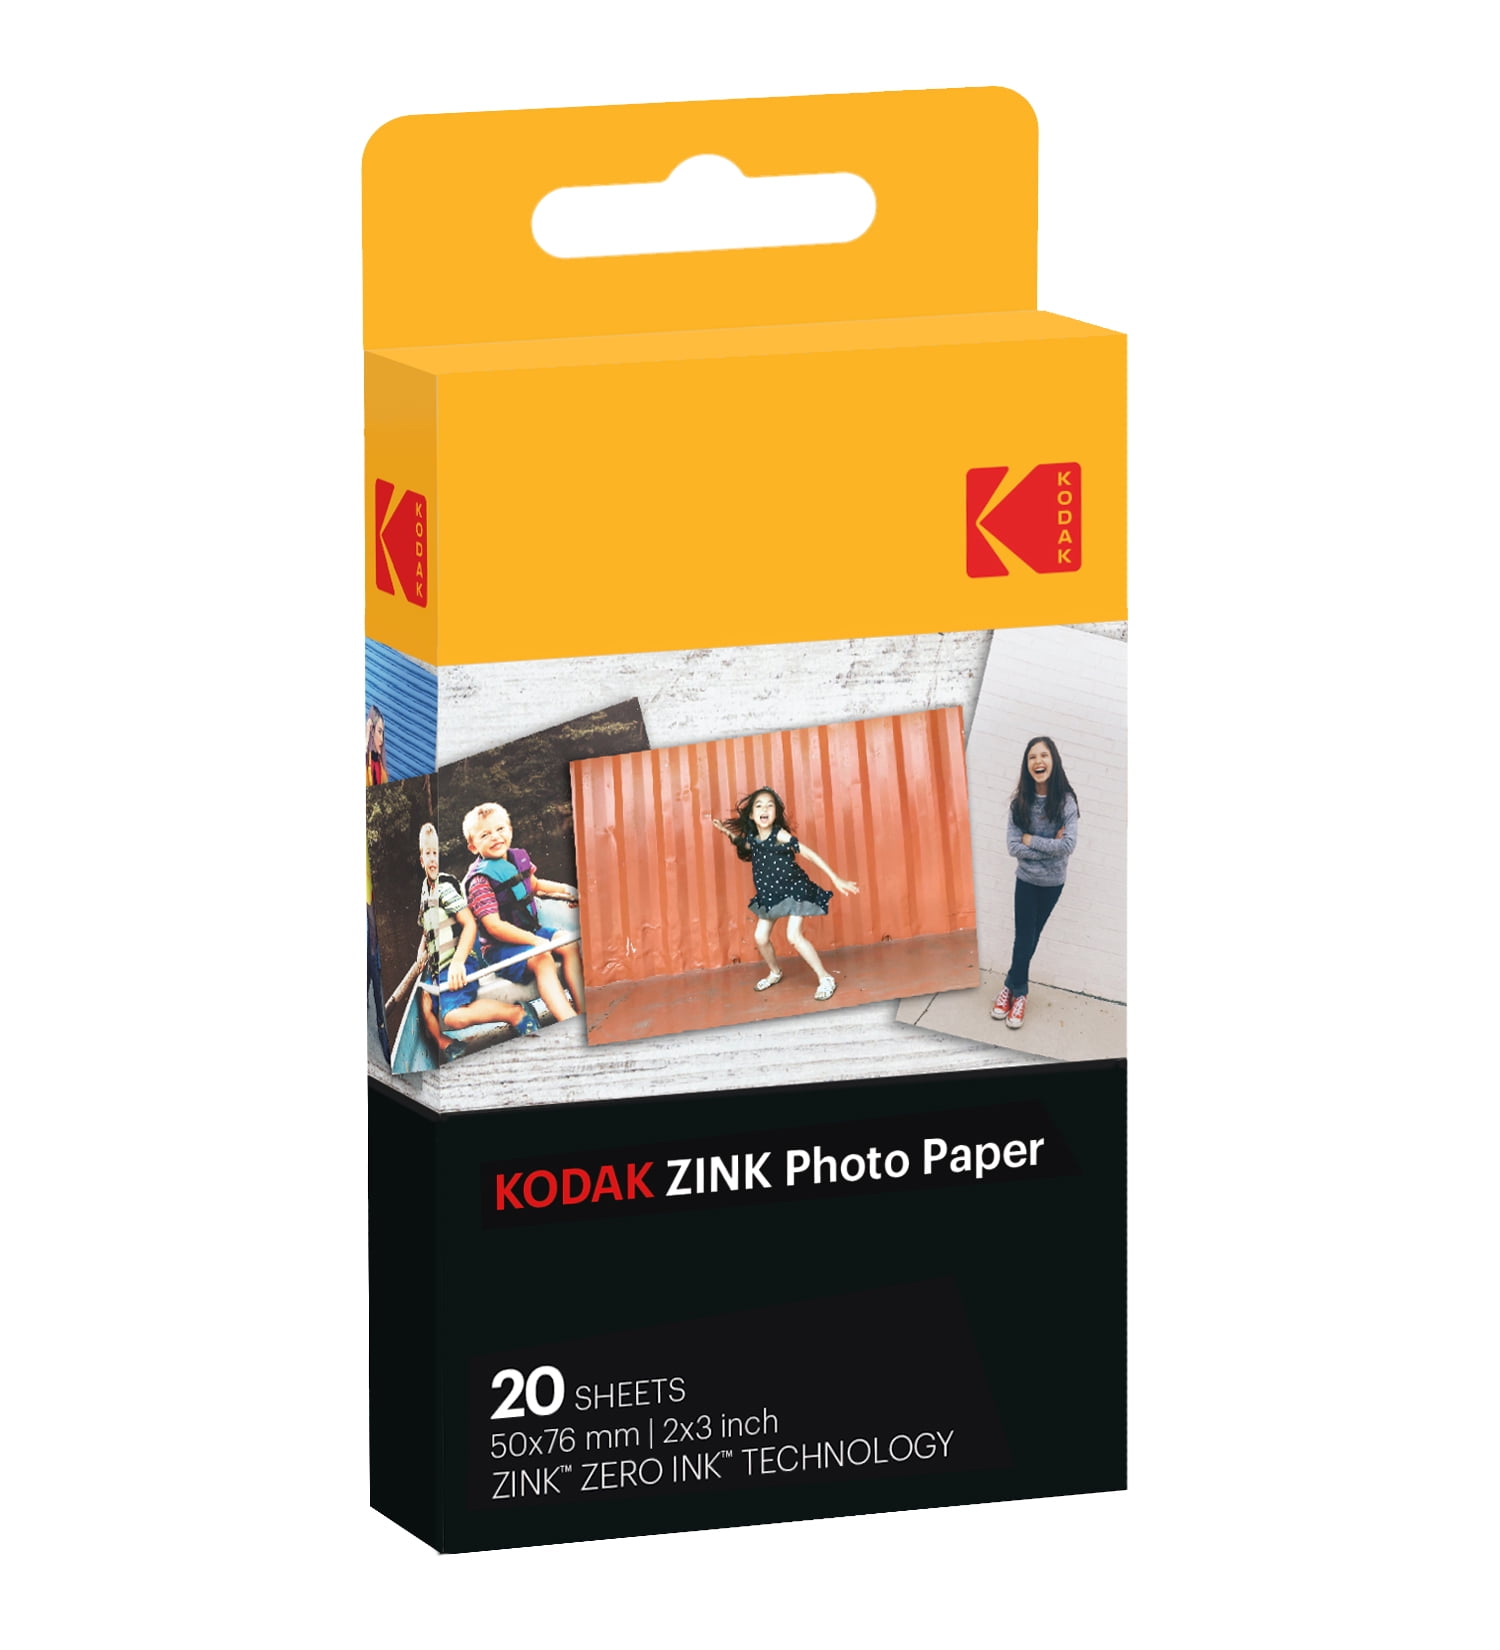 KODAK ZINK 3.5”x 4.25” Photo Paper